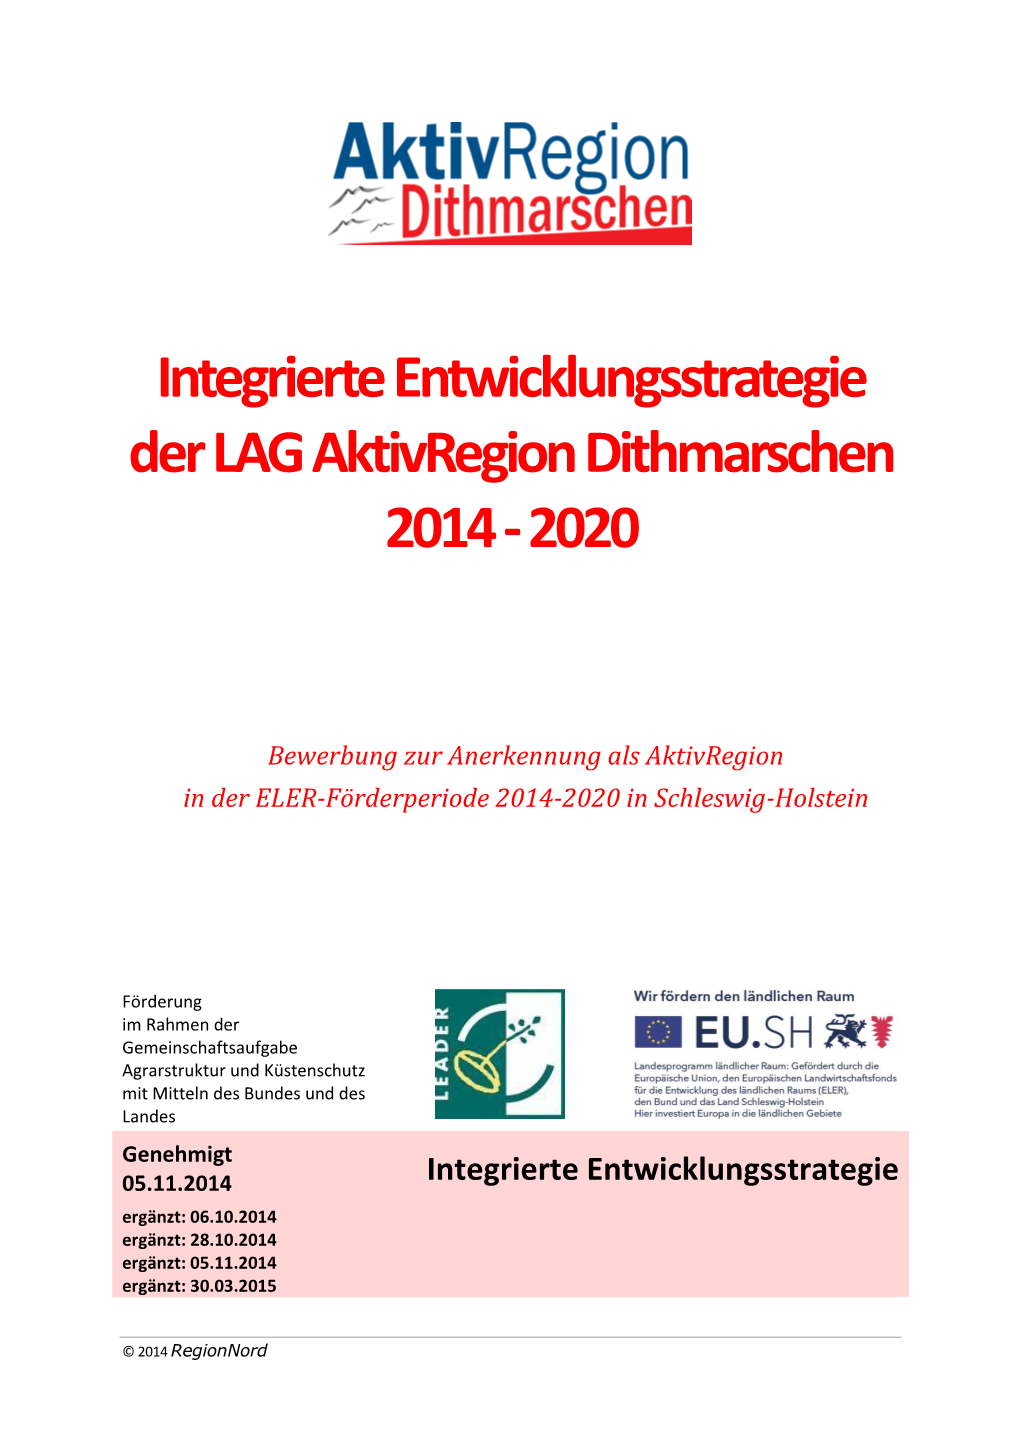 Integrierte Entwicklungsstrategie Der LAG Aktivregion Dithmarschen 2014 - 2020